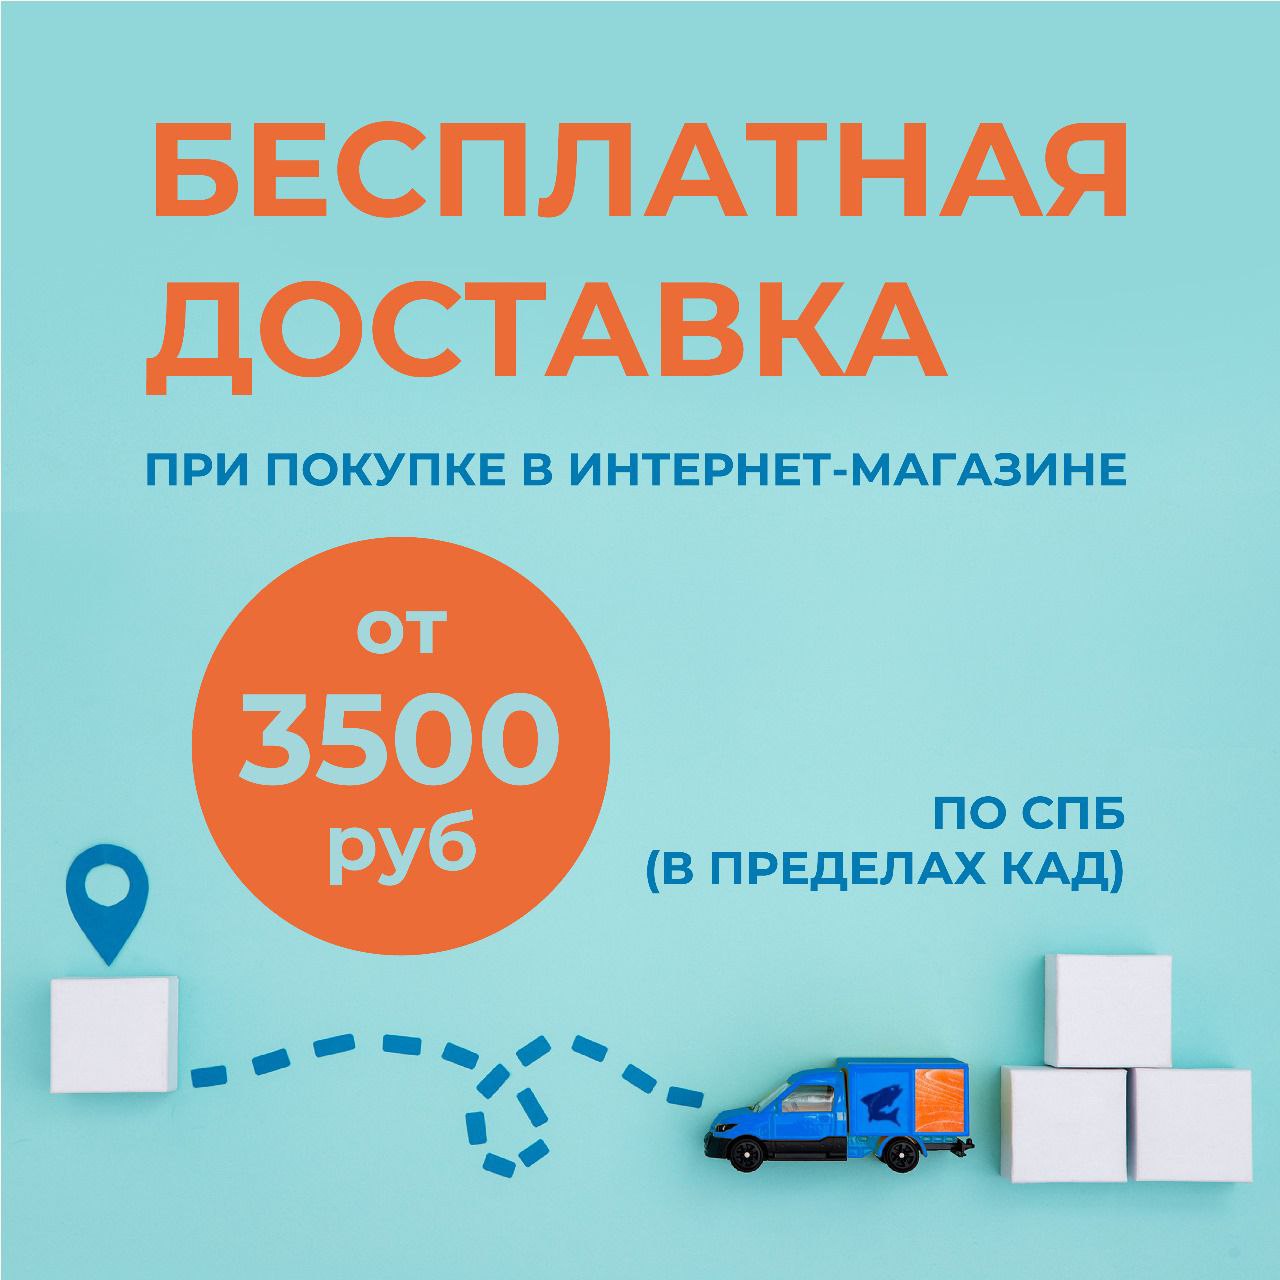 Бесплатная доставка при покупке от 3500 руб.